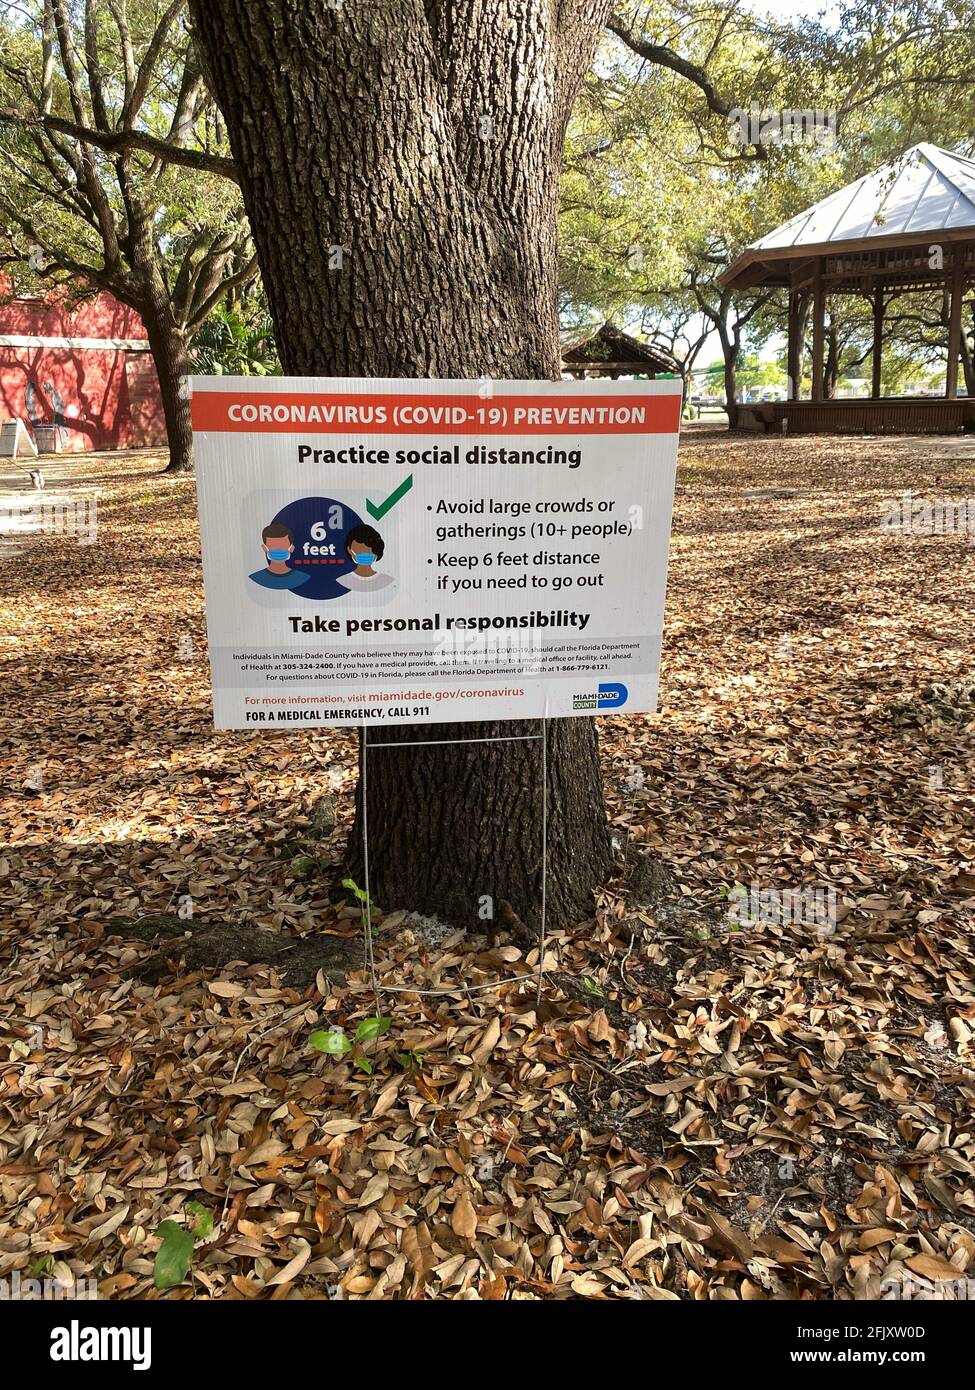 Parc tropical dans South Miami Path montrant un panneau quand ils rouvrent avec les directives COVID-19 de la CDC pour la distanciation sociale. Parcs du comté de dade de Miami. Banque D'Images